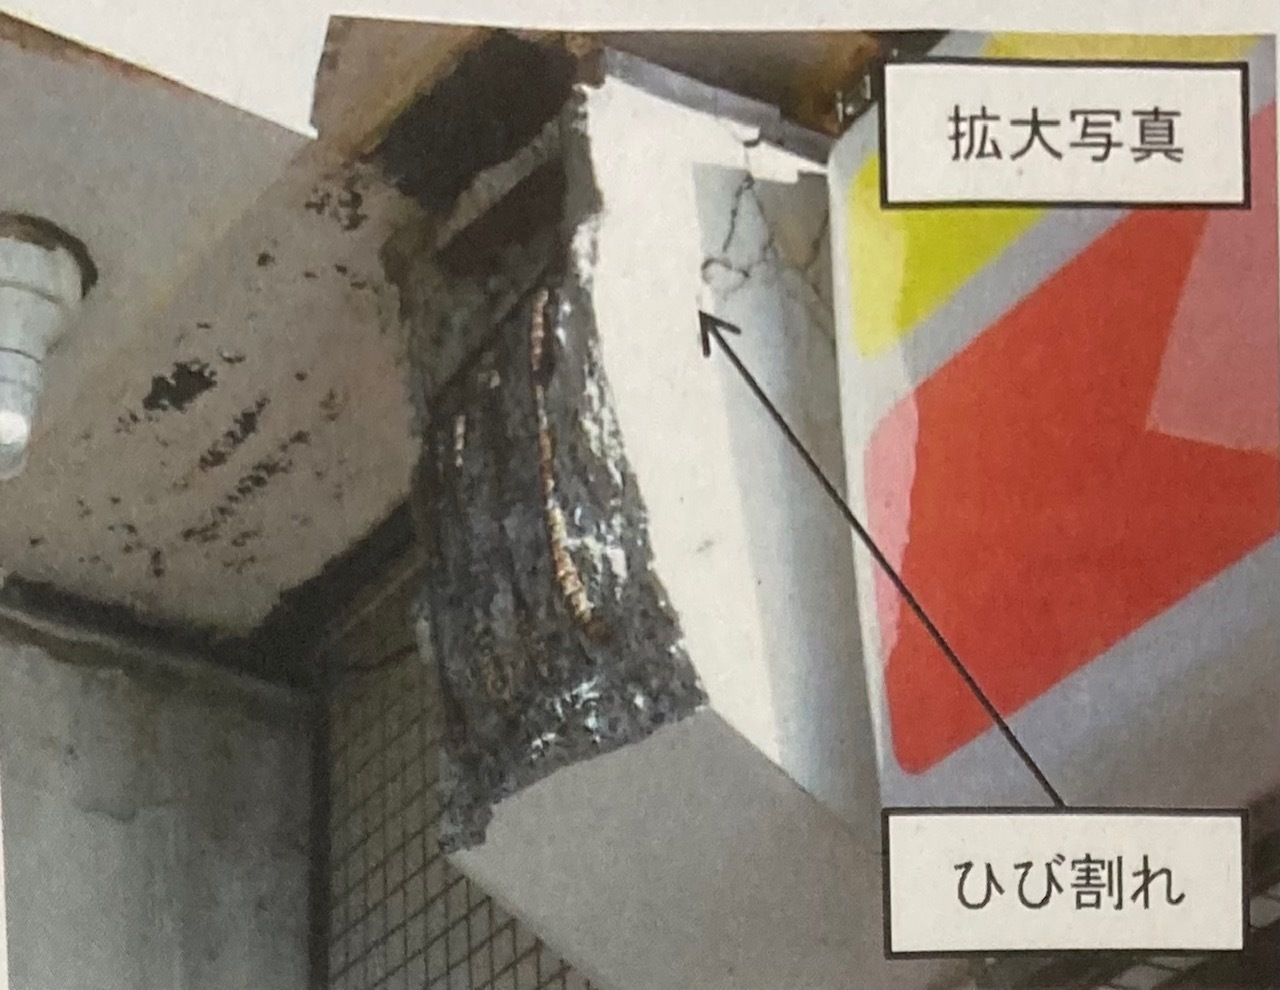 【最悪だ】久喜駅西口ペデストリアンデッキを支えているコンクリート片が落下した事故_f0153547_18574761.jpg